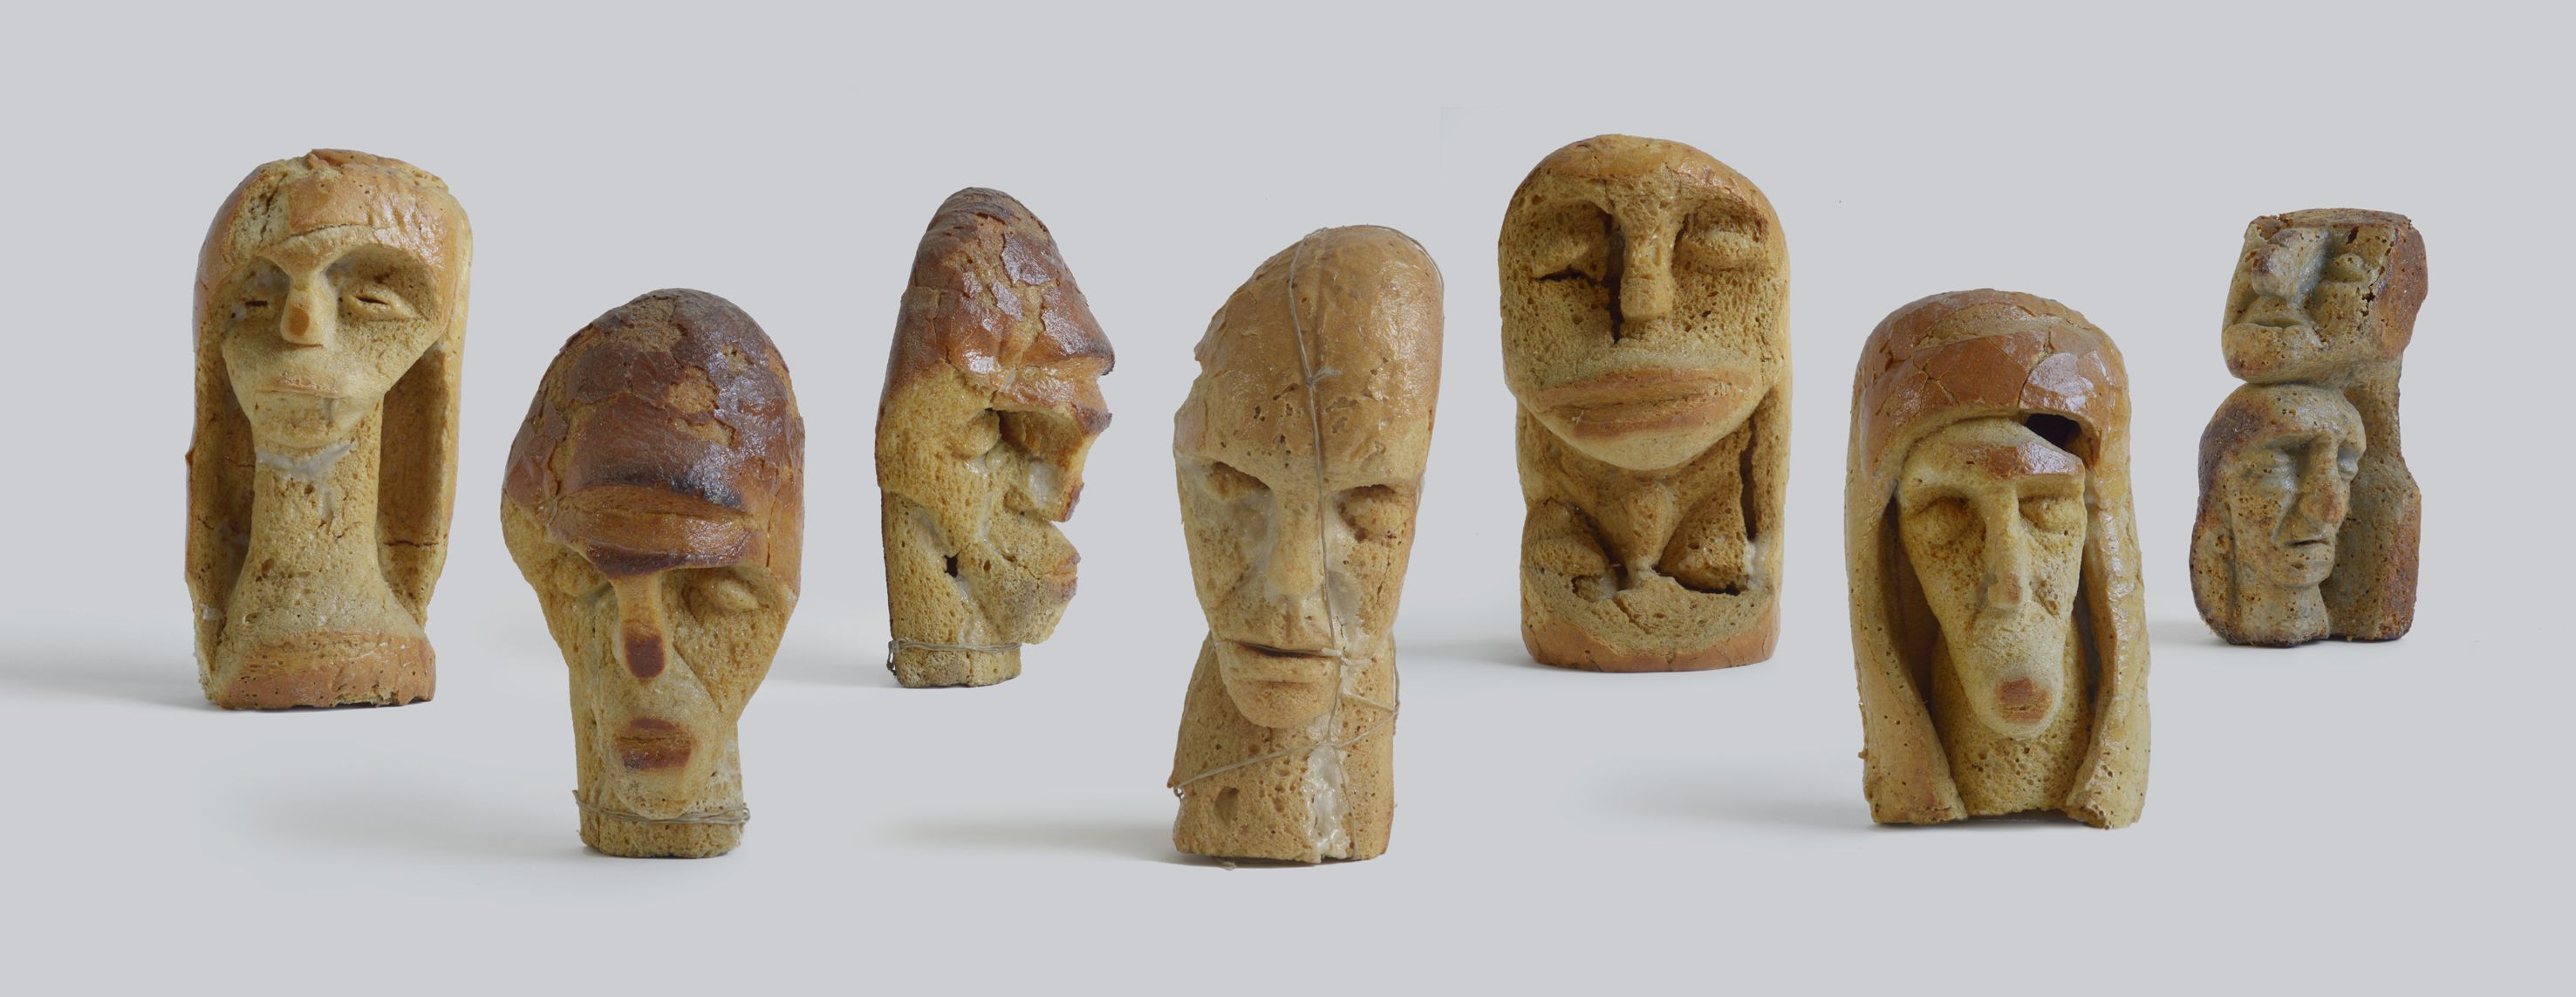 Kenyérfej-szobrok / Bread Head Sculptures, 2003, fotó/photo: HÜBNER Teodóra